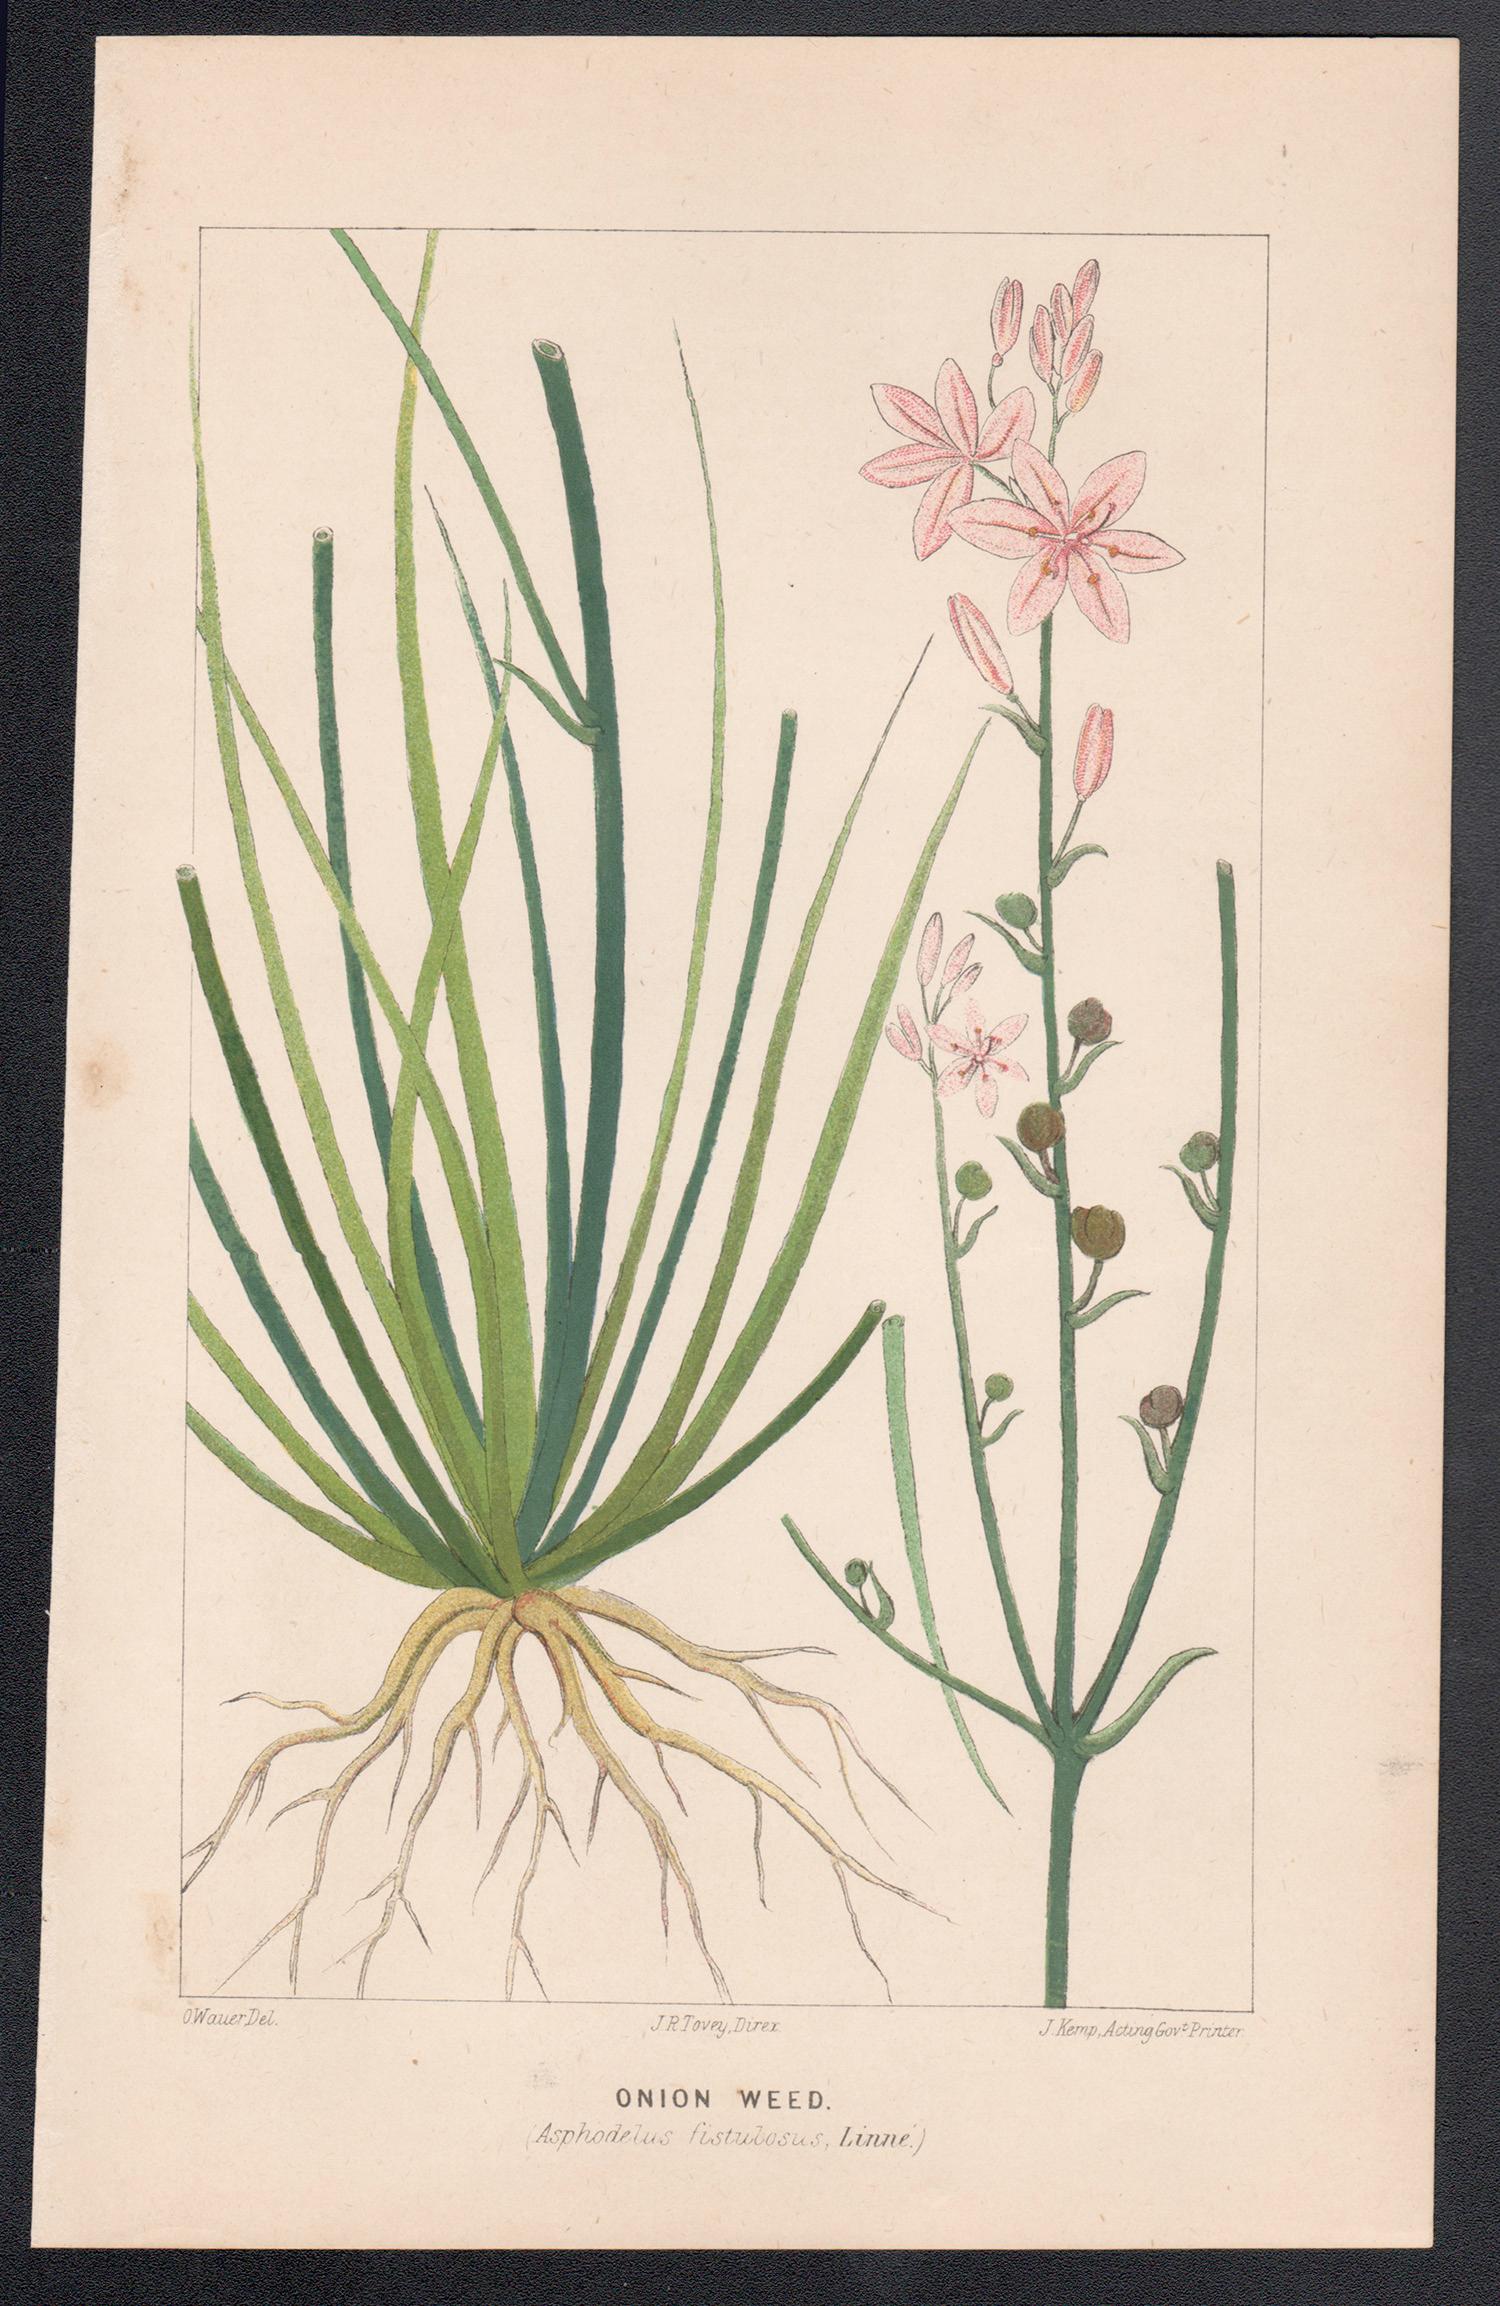 Onion Weed (Asphodelus fistulosus), antike botanische Lithographie – Print von O Wauer